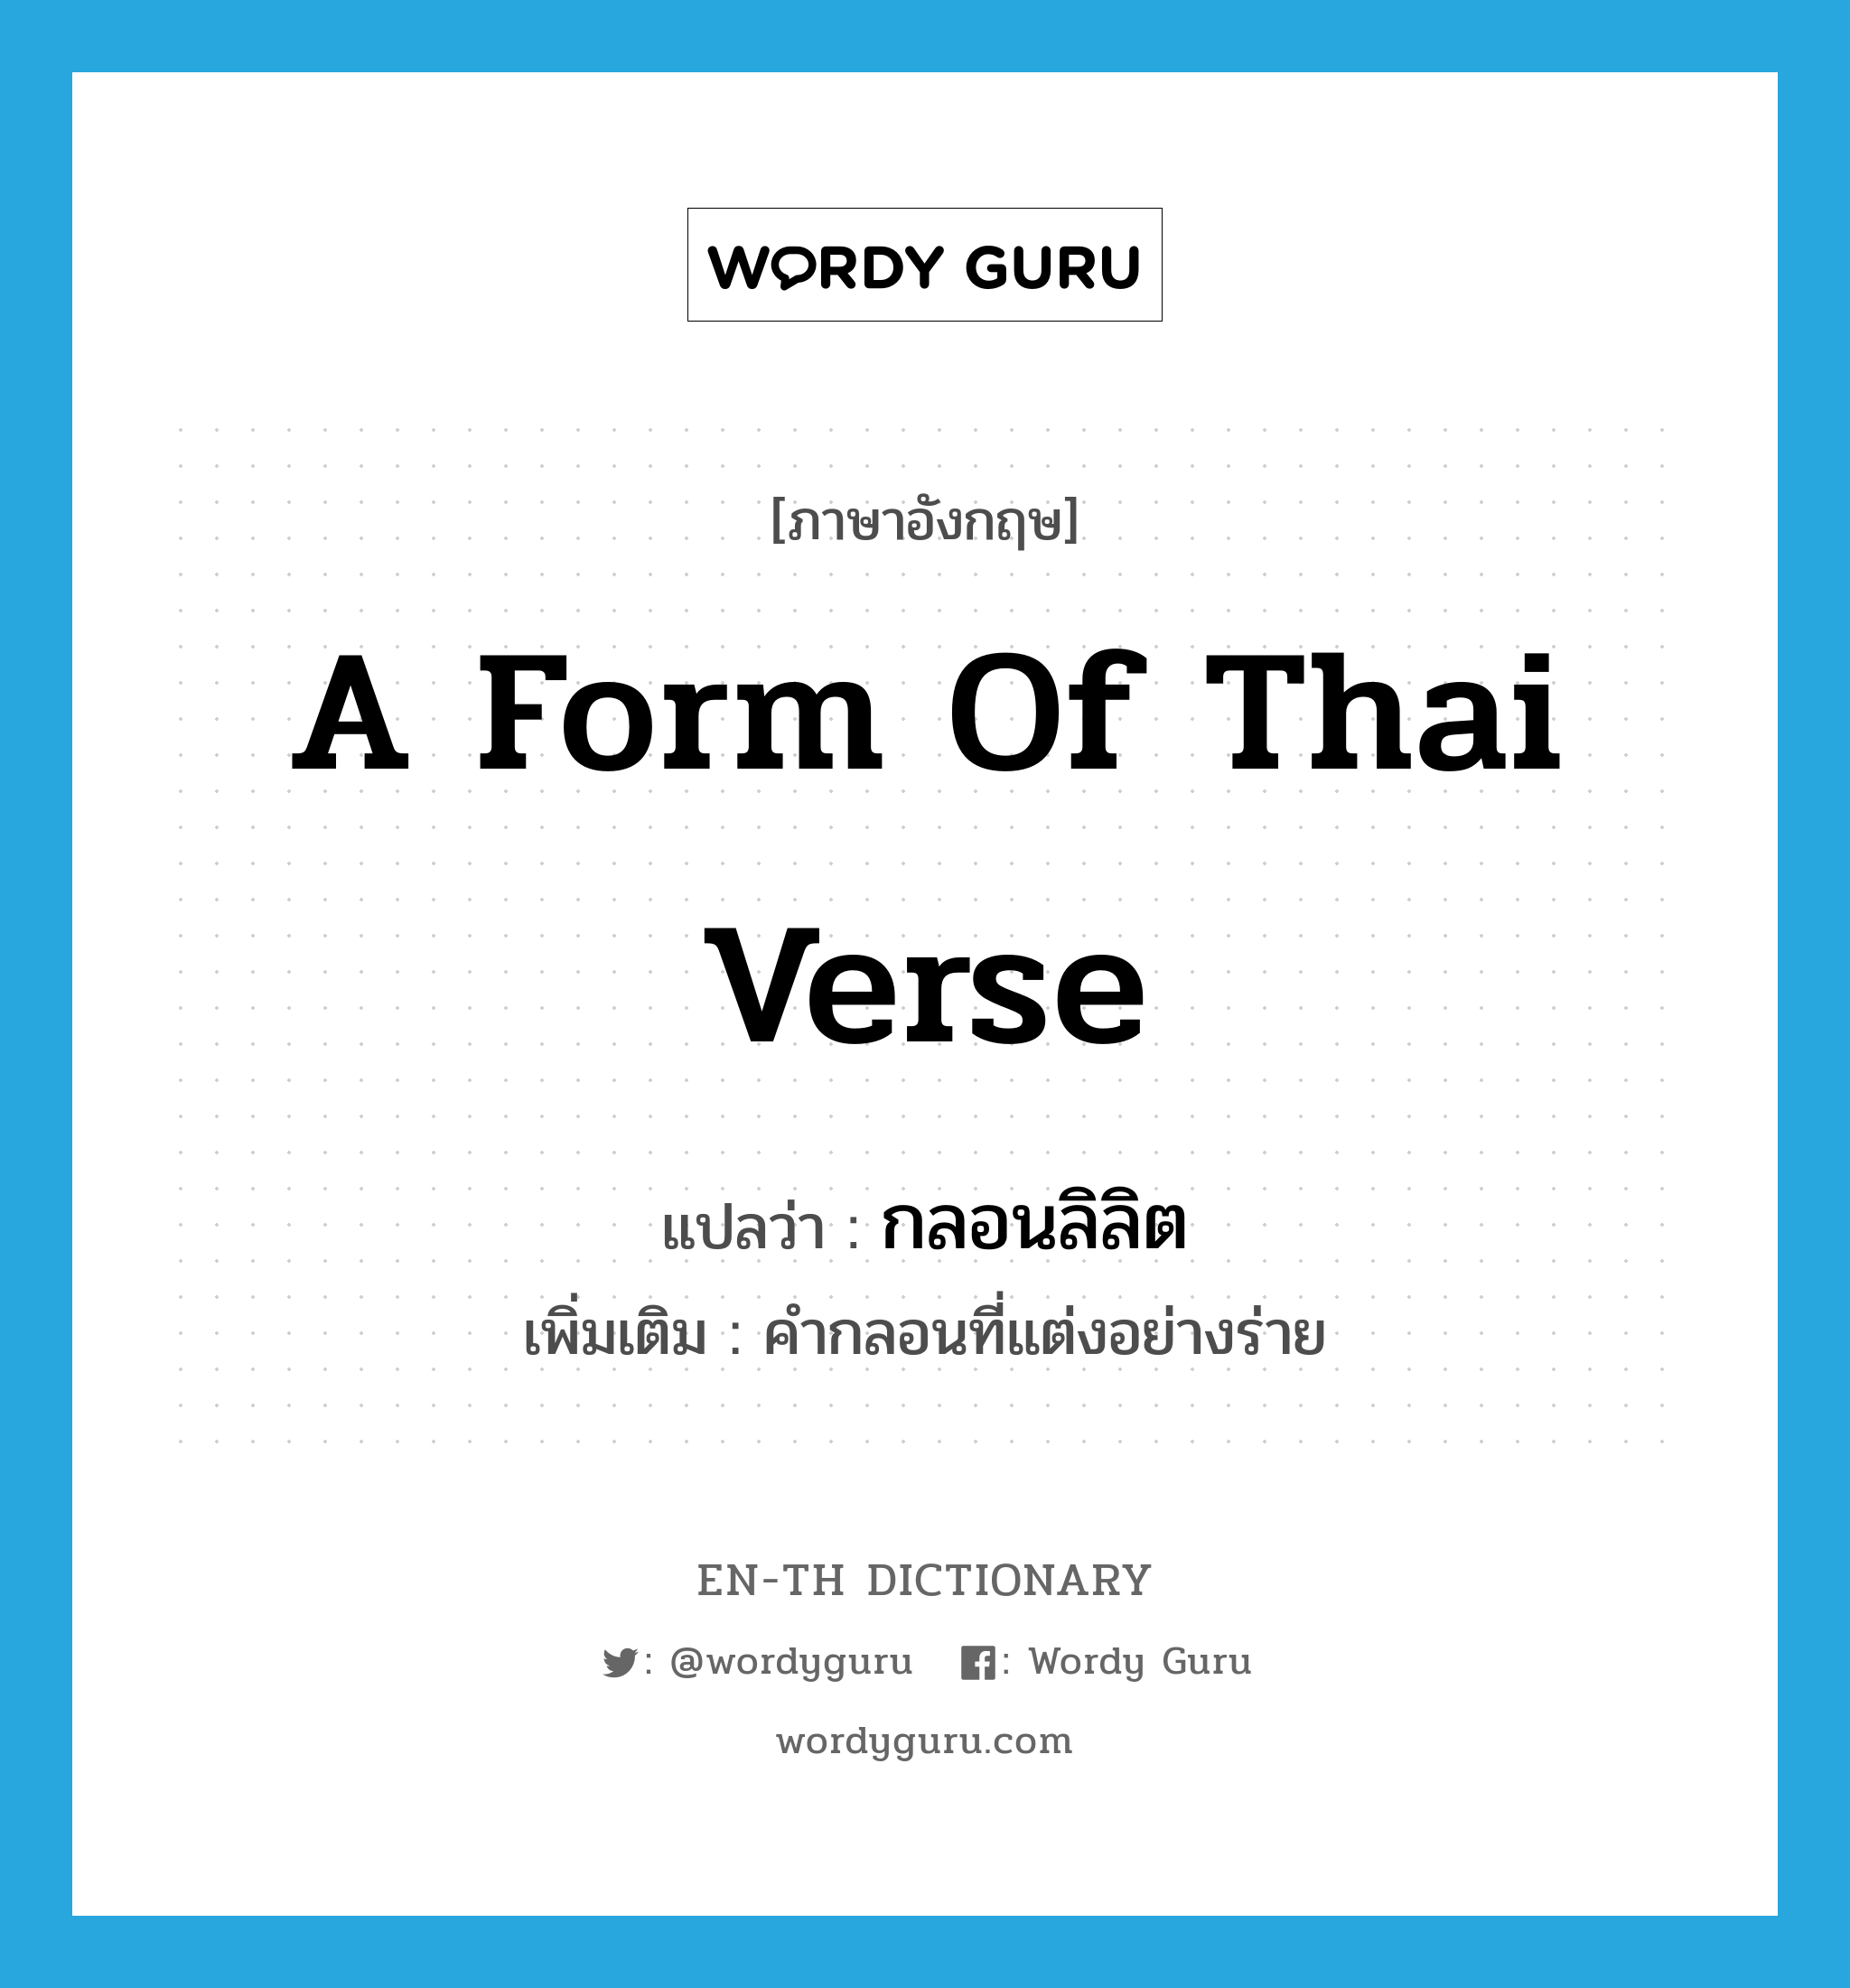 a form of Thai verse แปลว่า? คำศัพท์ในกลุ่มประเภท N, คำศัพท์ภาษาอังกฤษ a form of Thai verse แปลว่า กลอนลิลิต ประเภท N เพิ่มเติม คำกลอนที่แต่งอย่างร่าย หมวด N